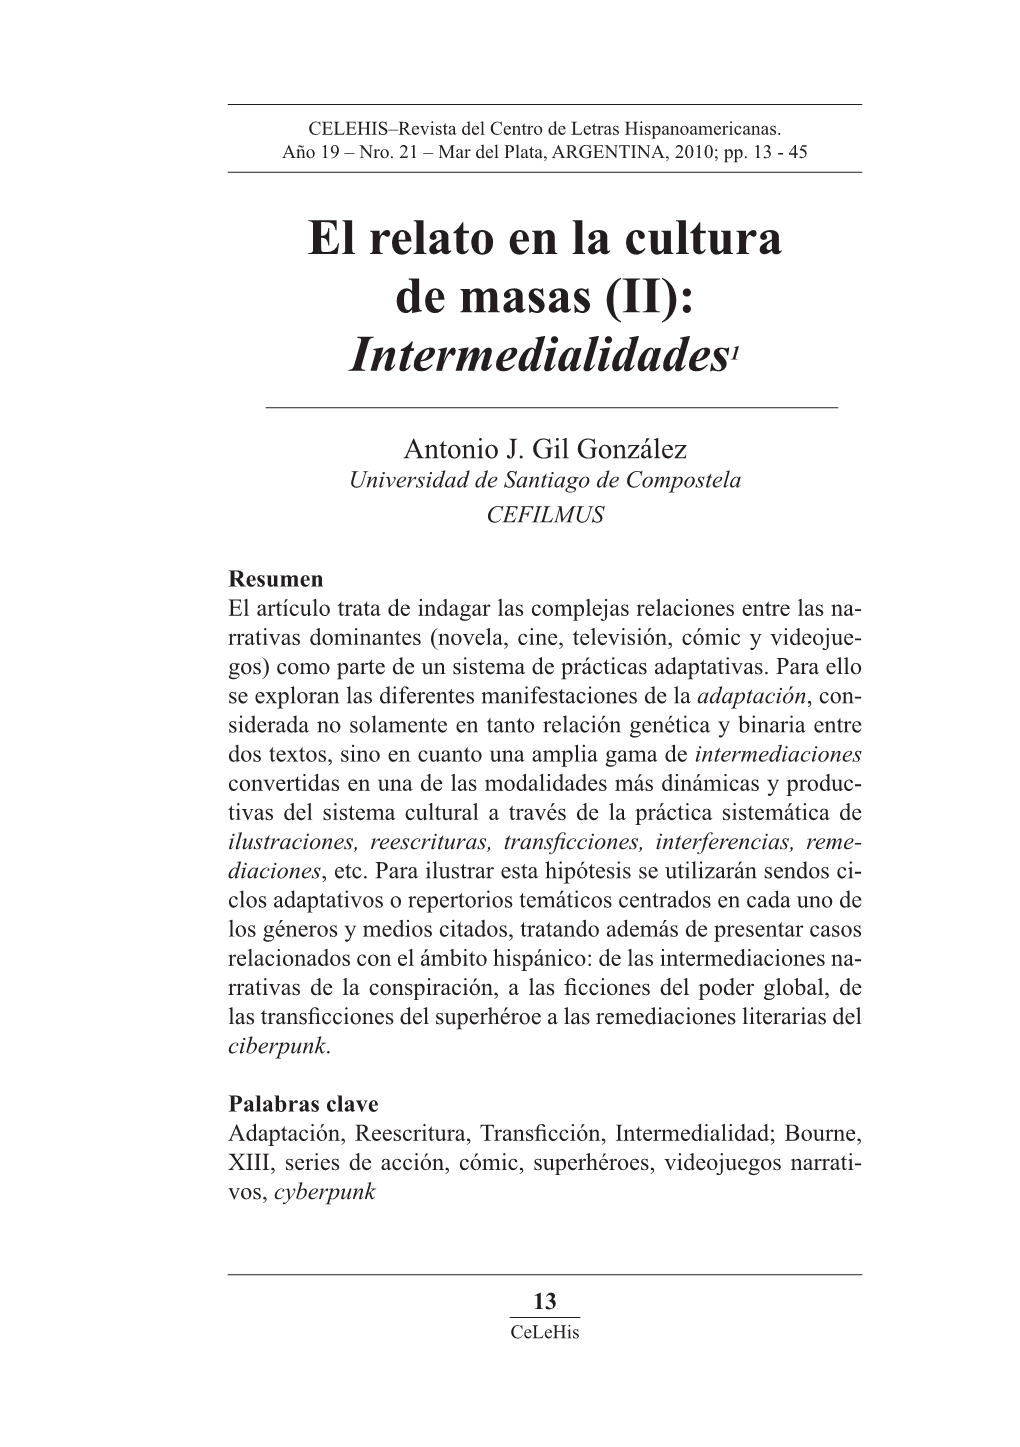 El Relato En La Cultura De Masas (II): Intermedialidades1